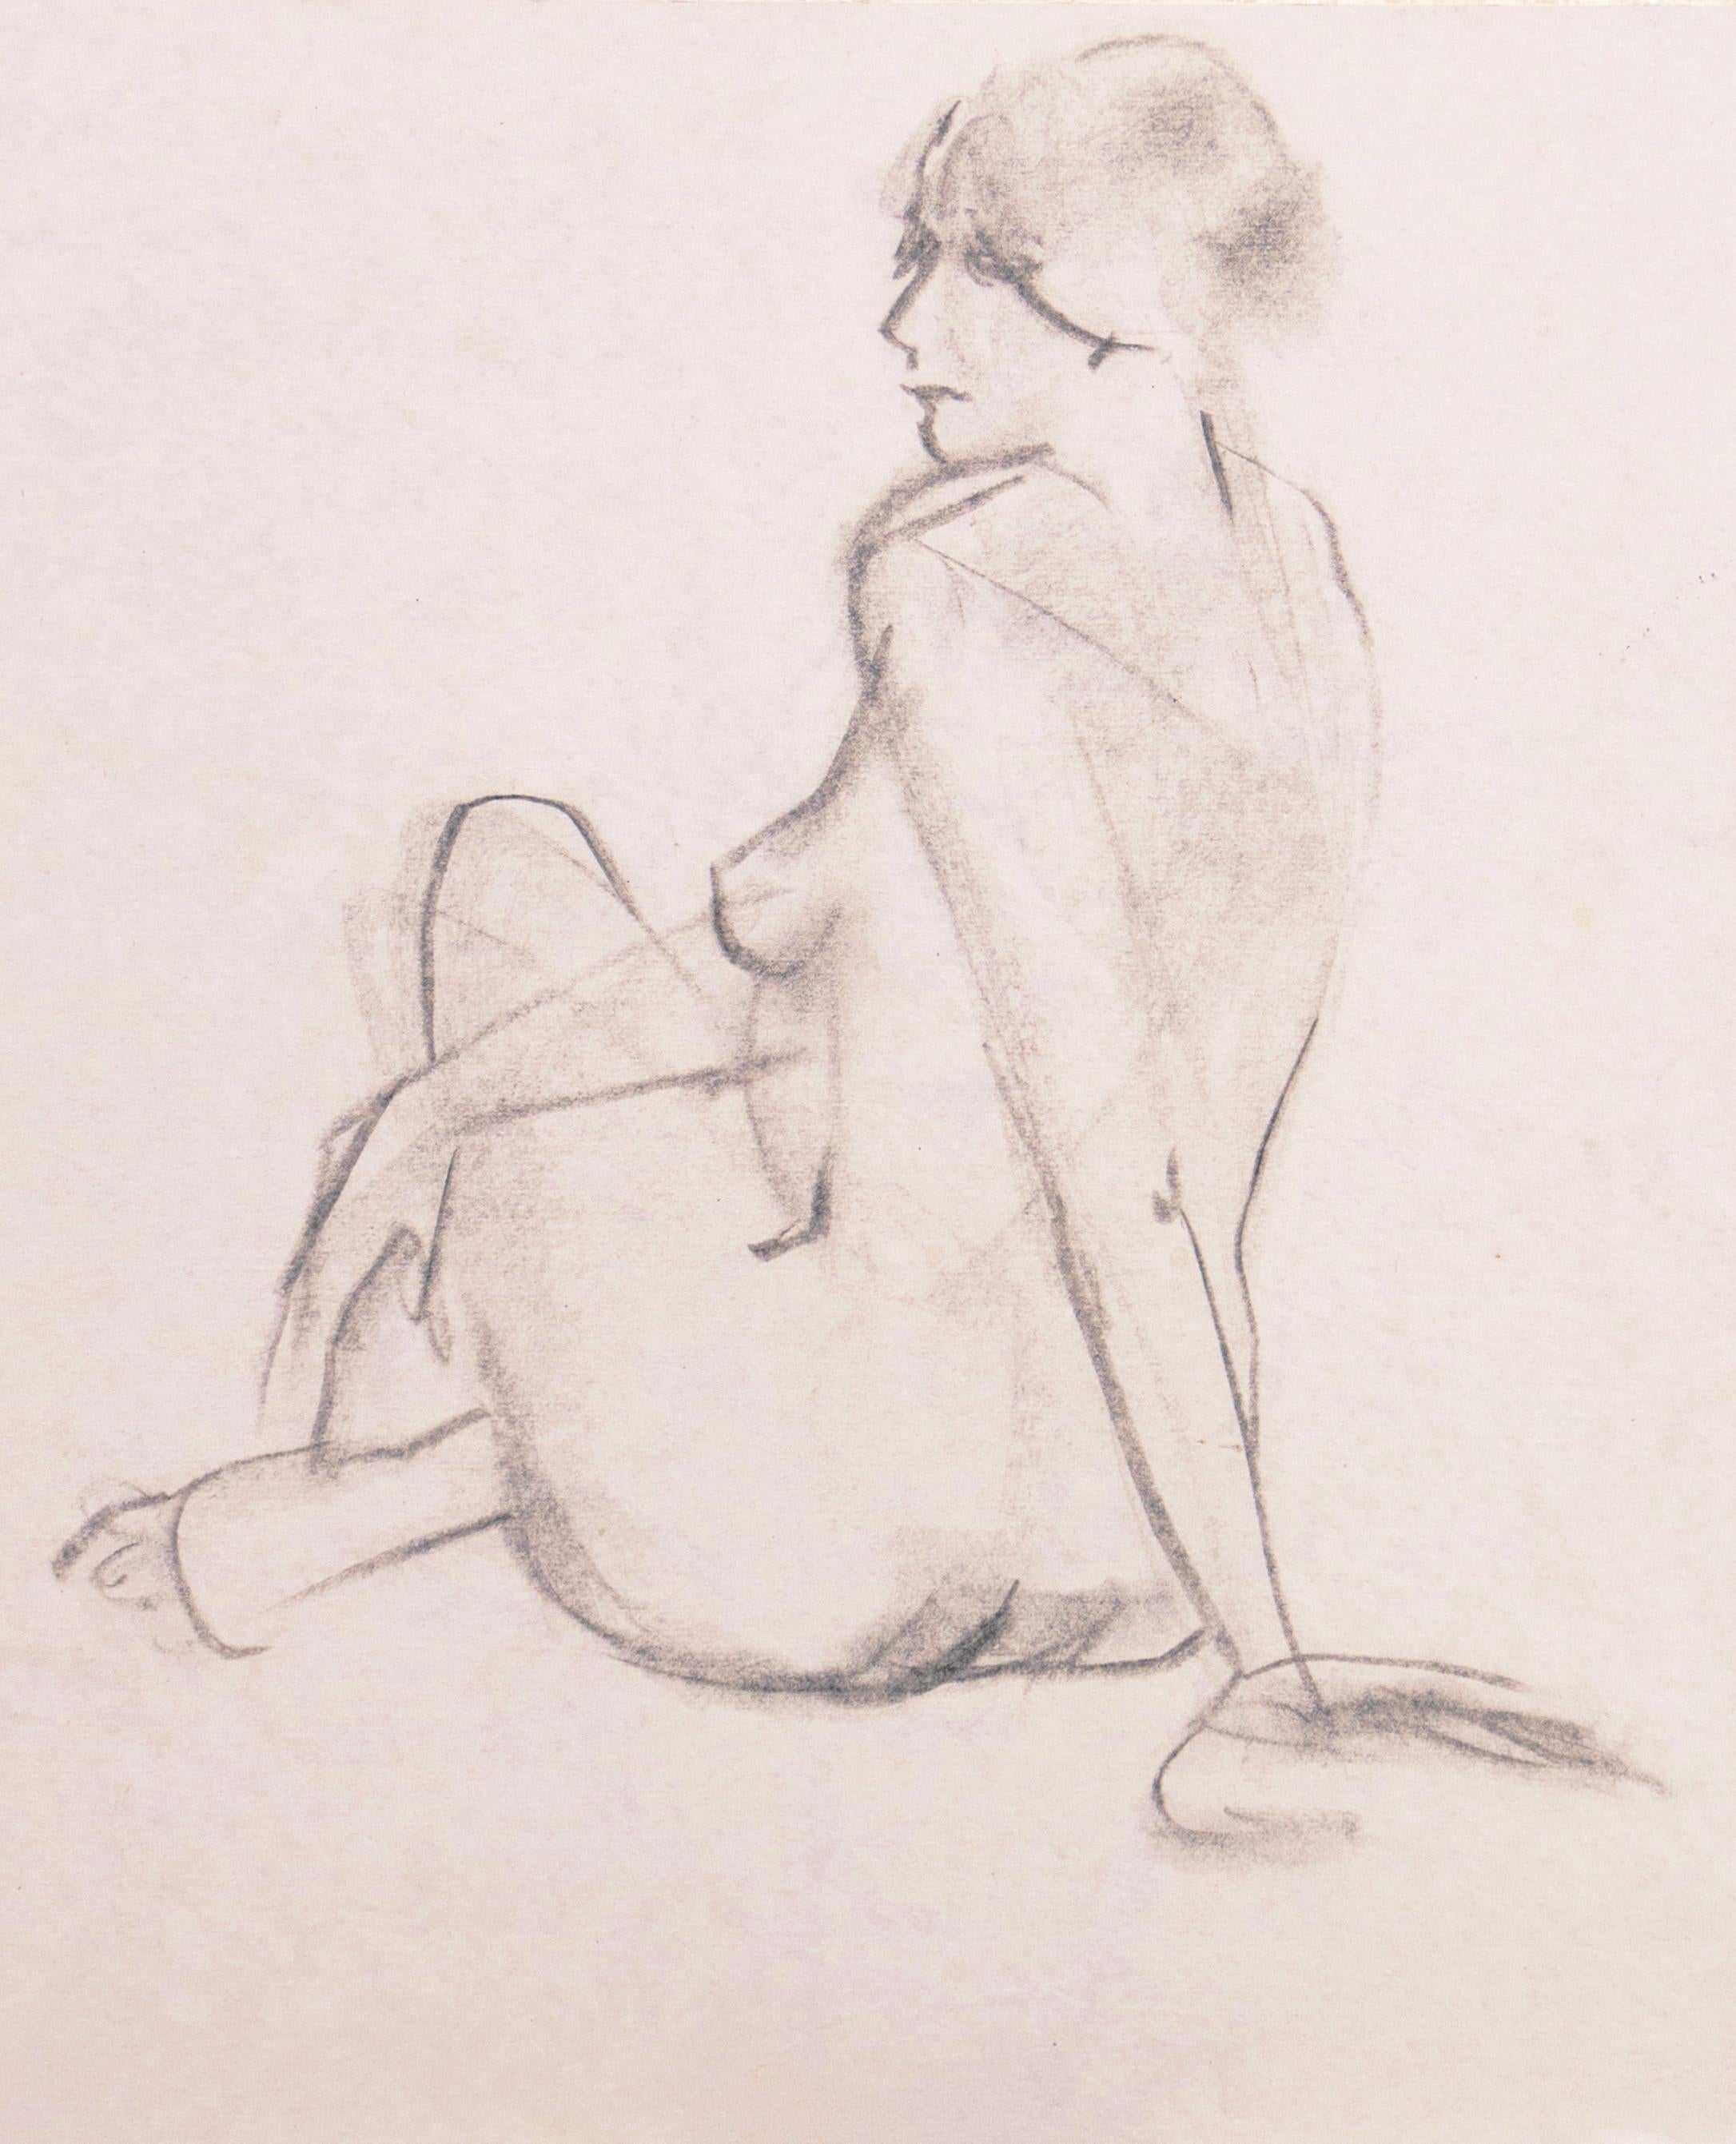 „ Sitzender Akt“, kalifornische modernistische figurale Zeichnung